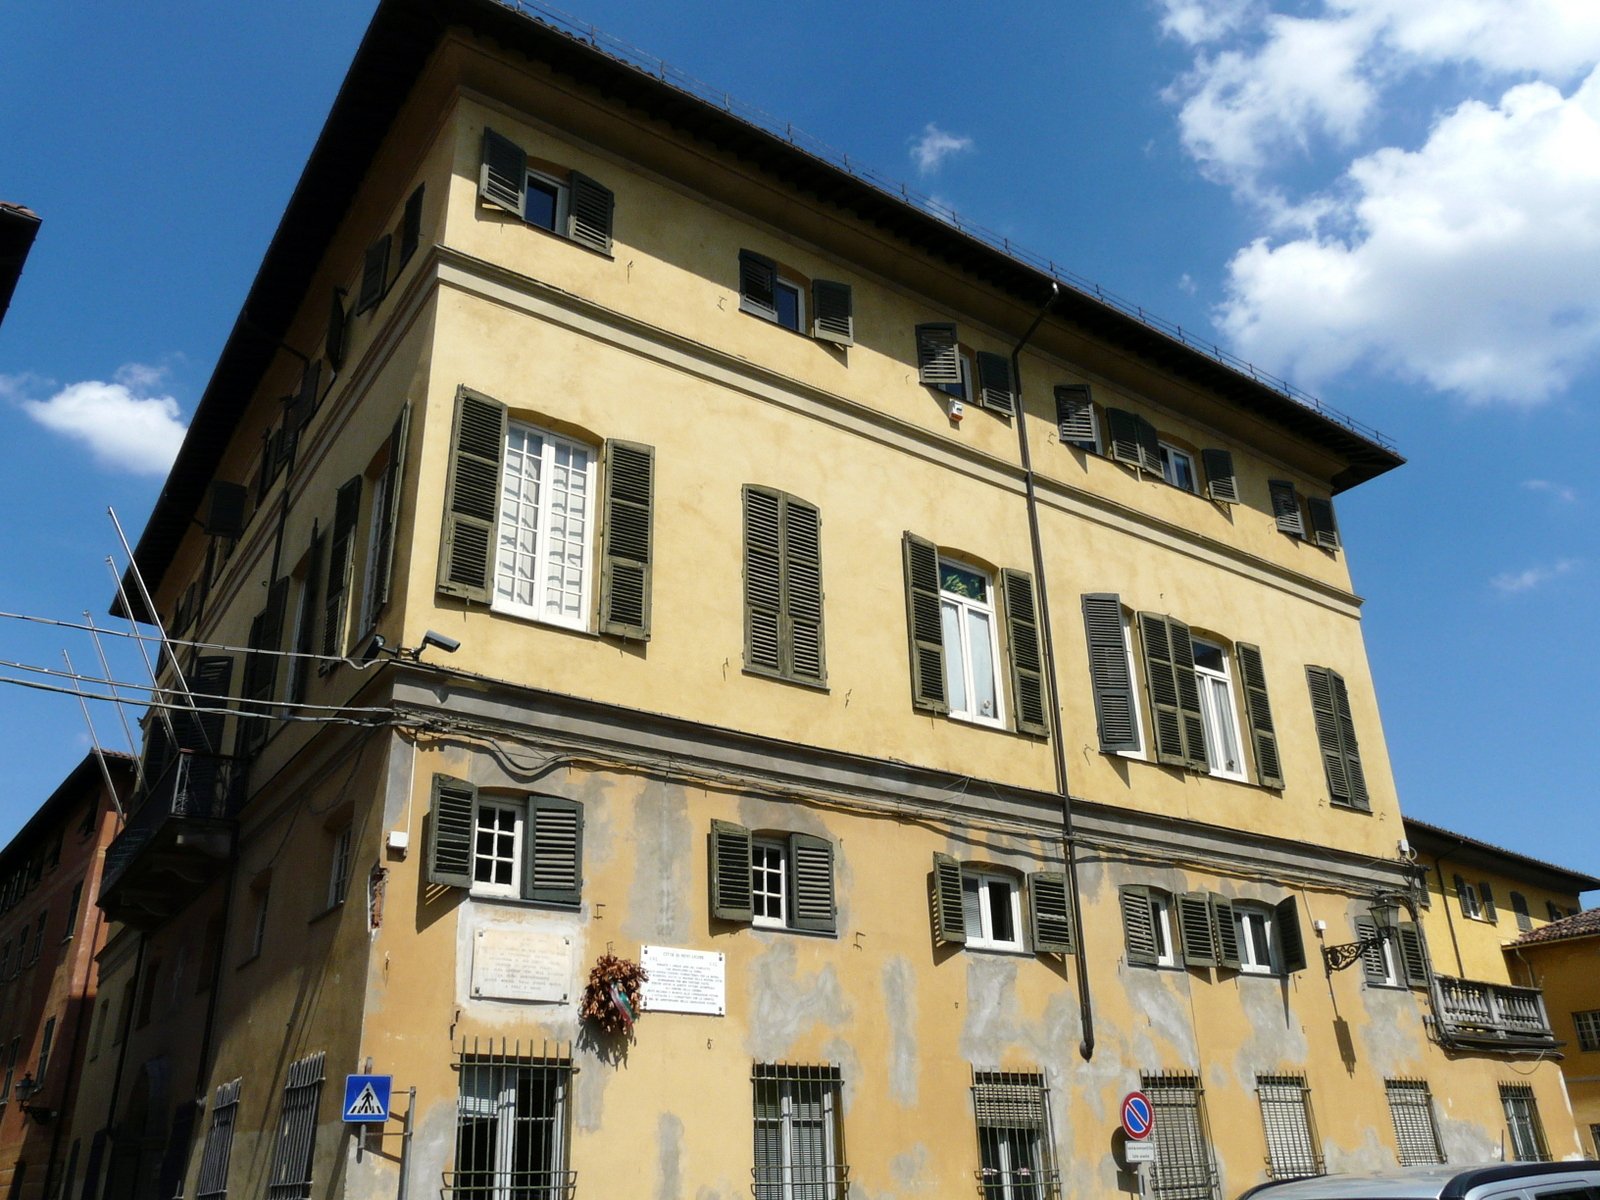 A Palazzo Pallavicini Inps e Centro per l’impiego di Novi Ligure